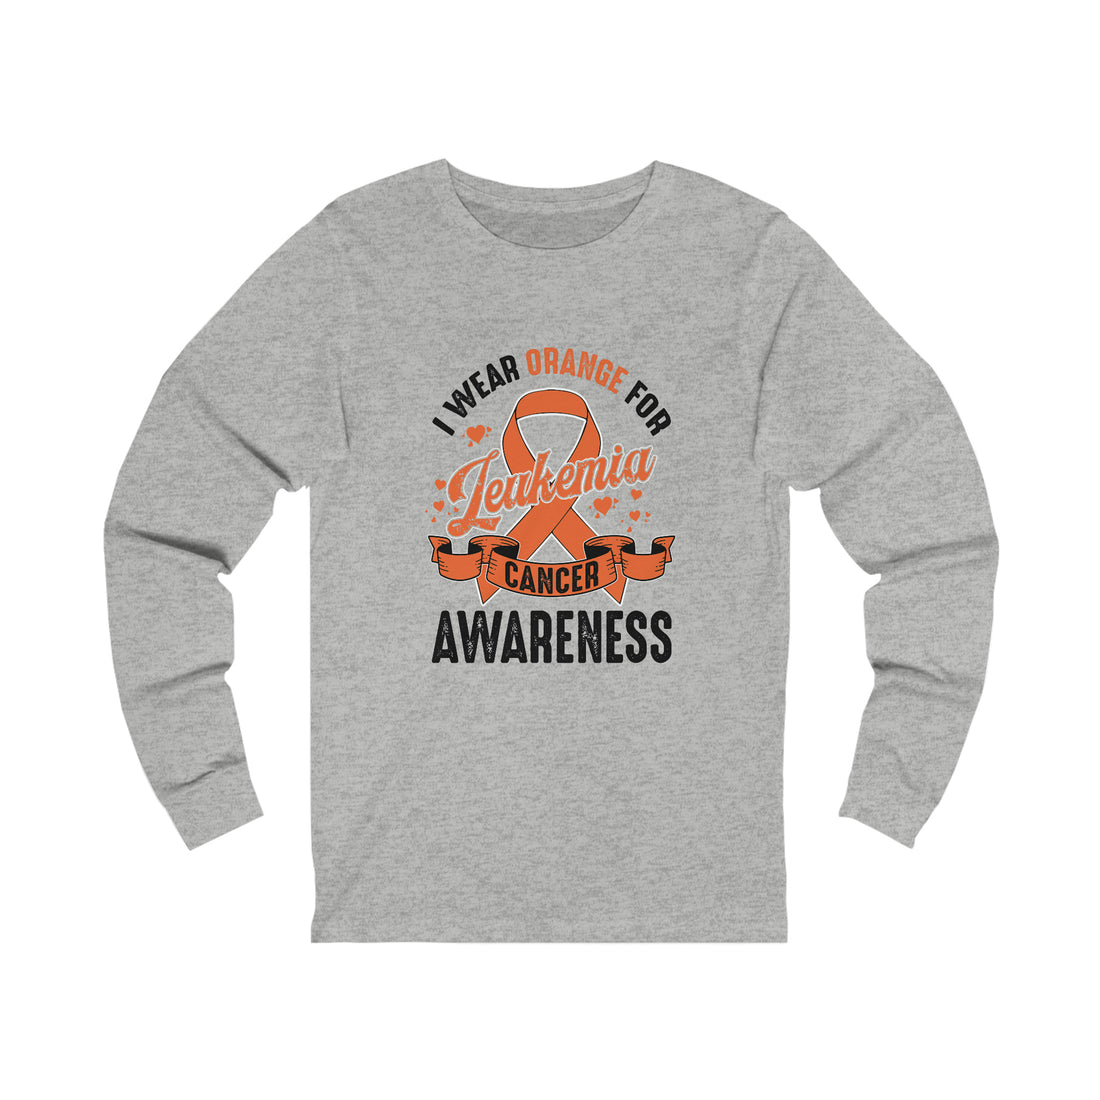 I Wear Orange For Leukemia Cancer Awareness  - Unisex Jersey Long Sleeve Tee